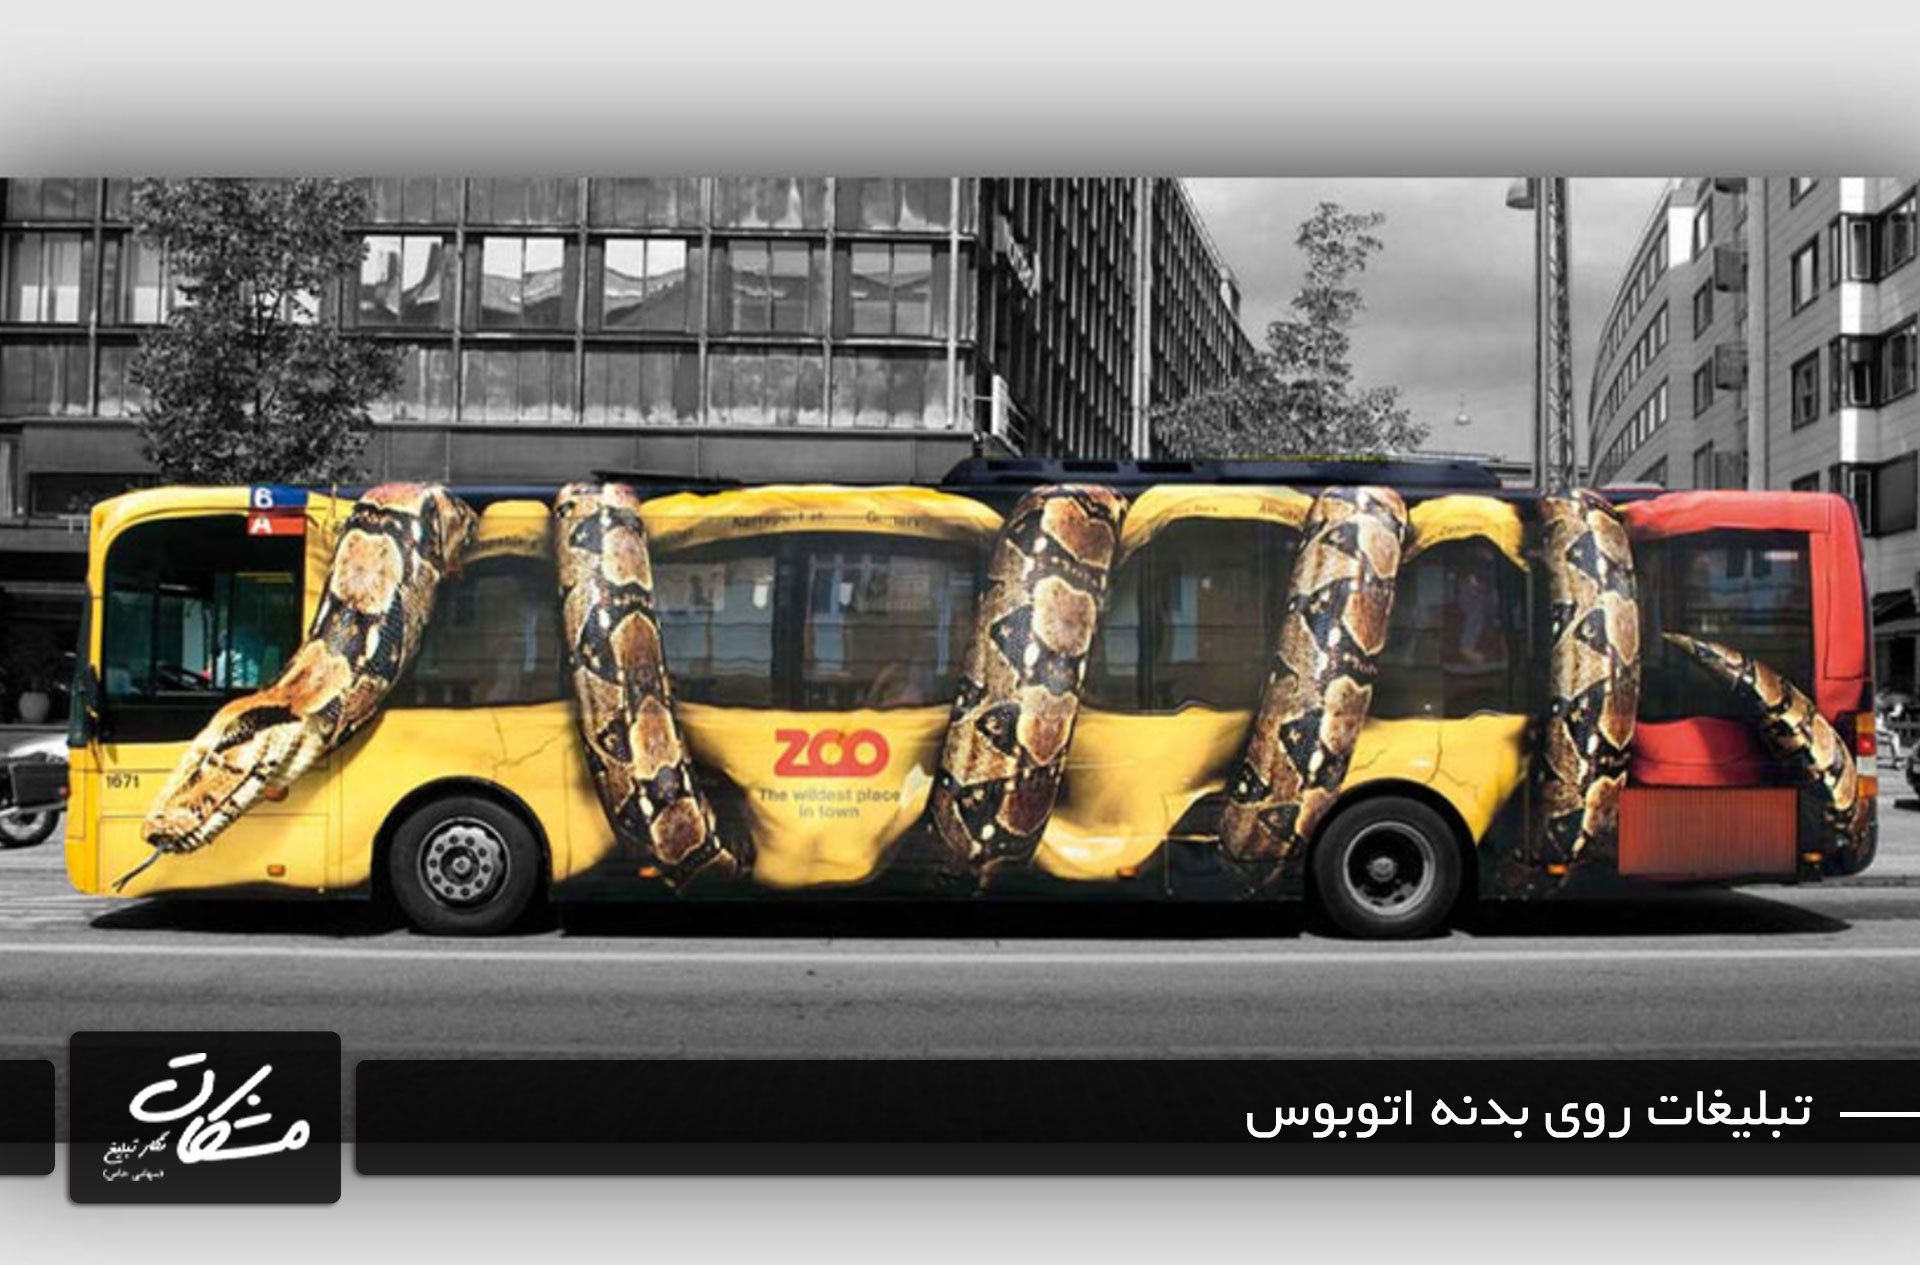 تبلیغات محیطی ترانزیت یا متحرک بر روی اتوبوس